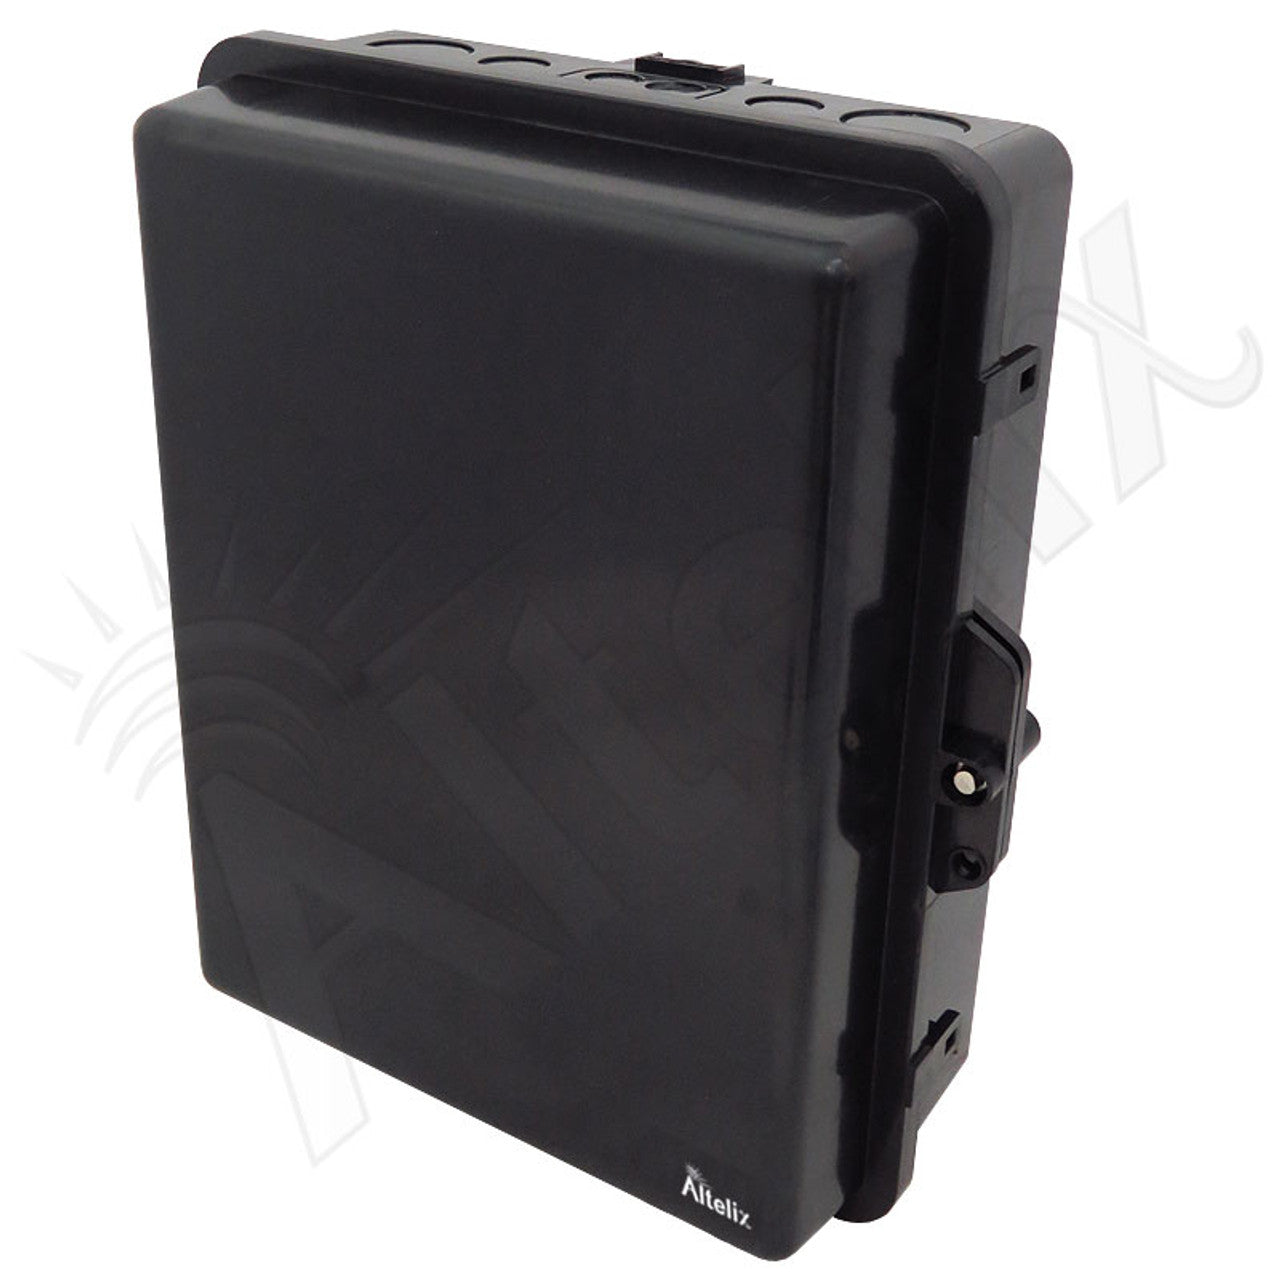 Buy black Altelix 14x11x5 PC + ABS Weatherproof DIN Rail NEMA Enclosure with Hinged Door